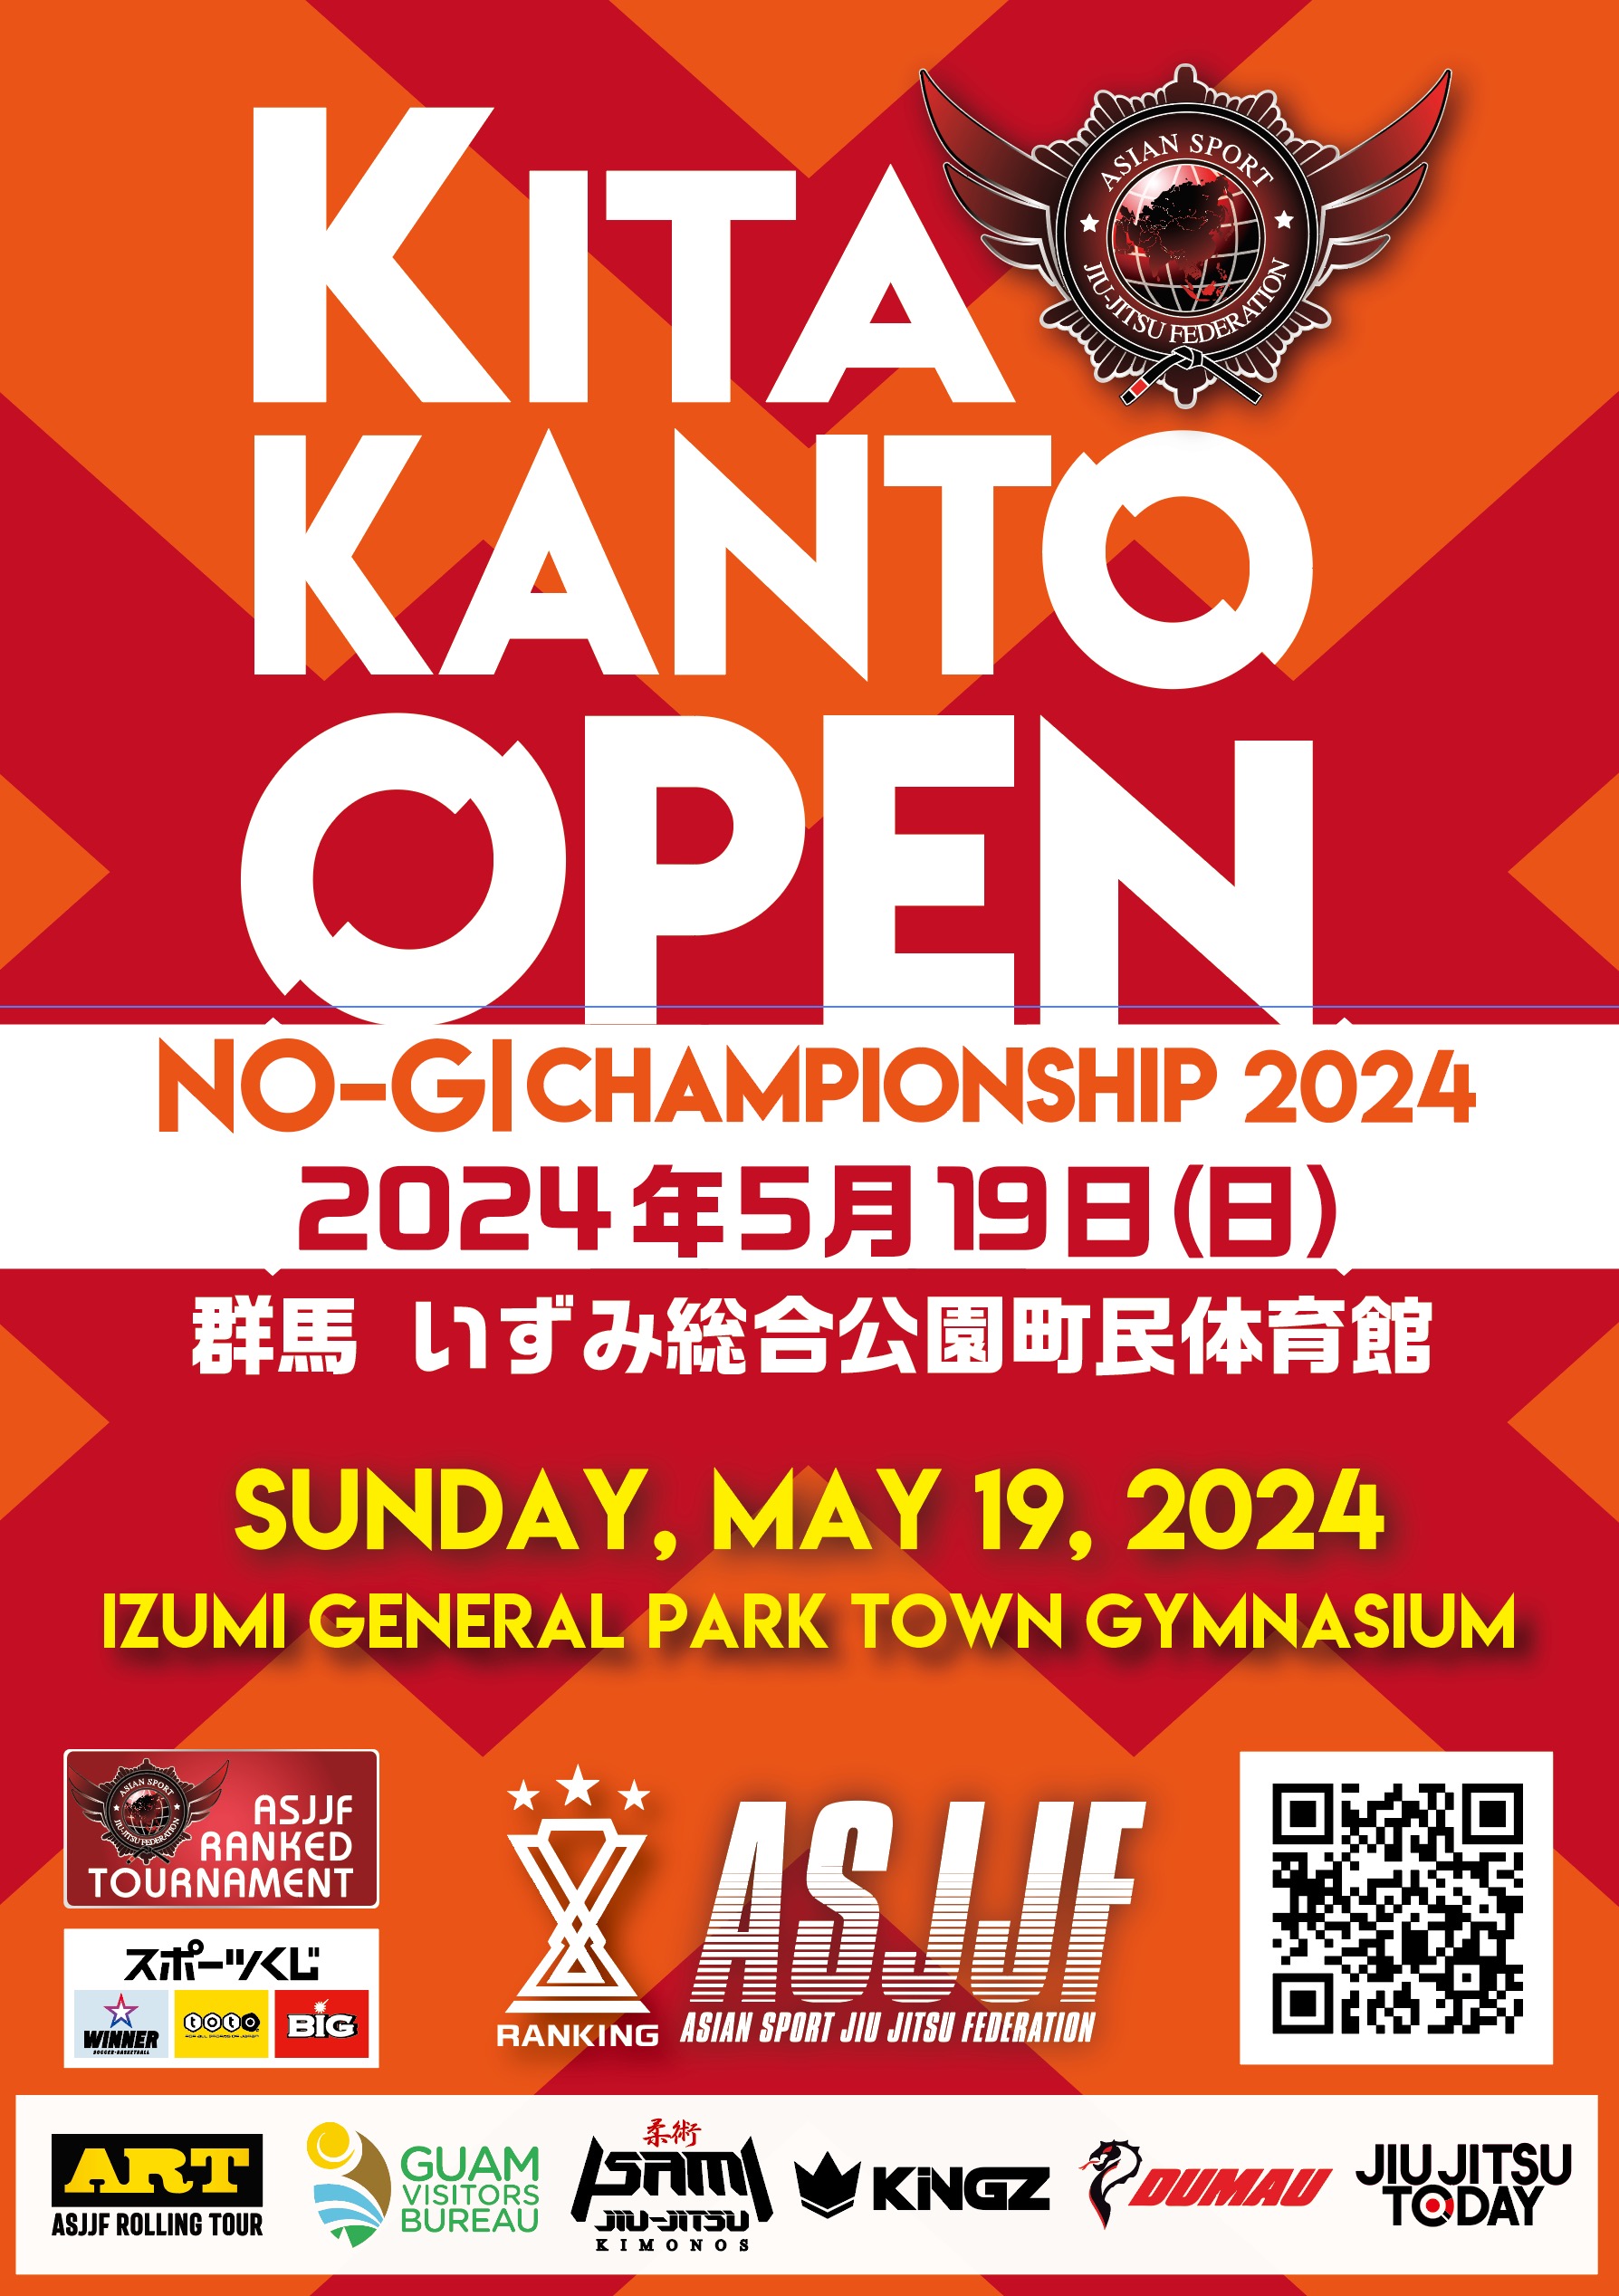 kita kanto open no-gi championship 2024  (no-gi)